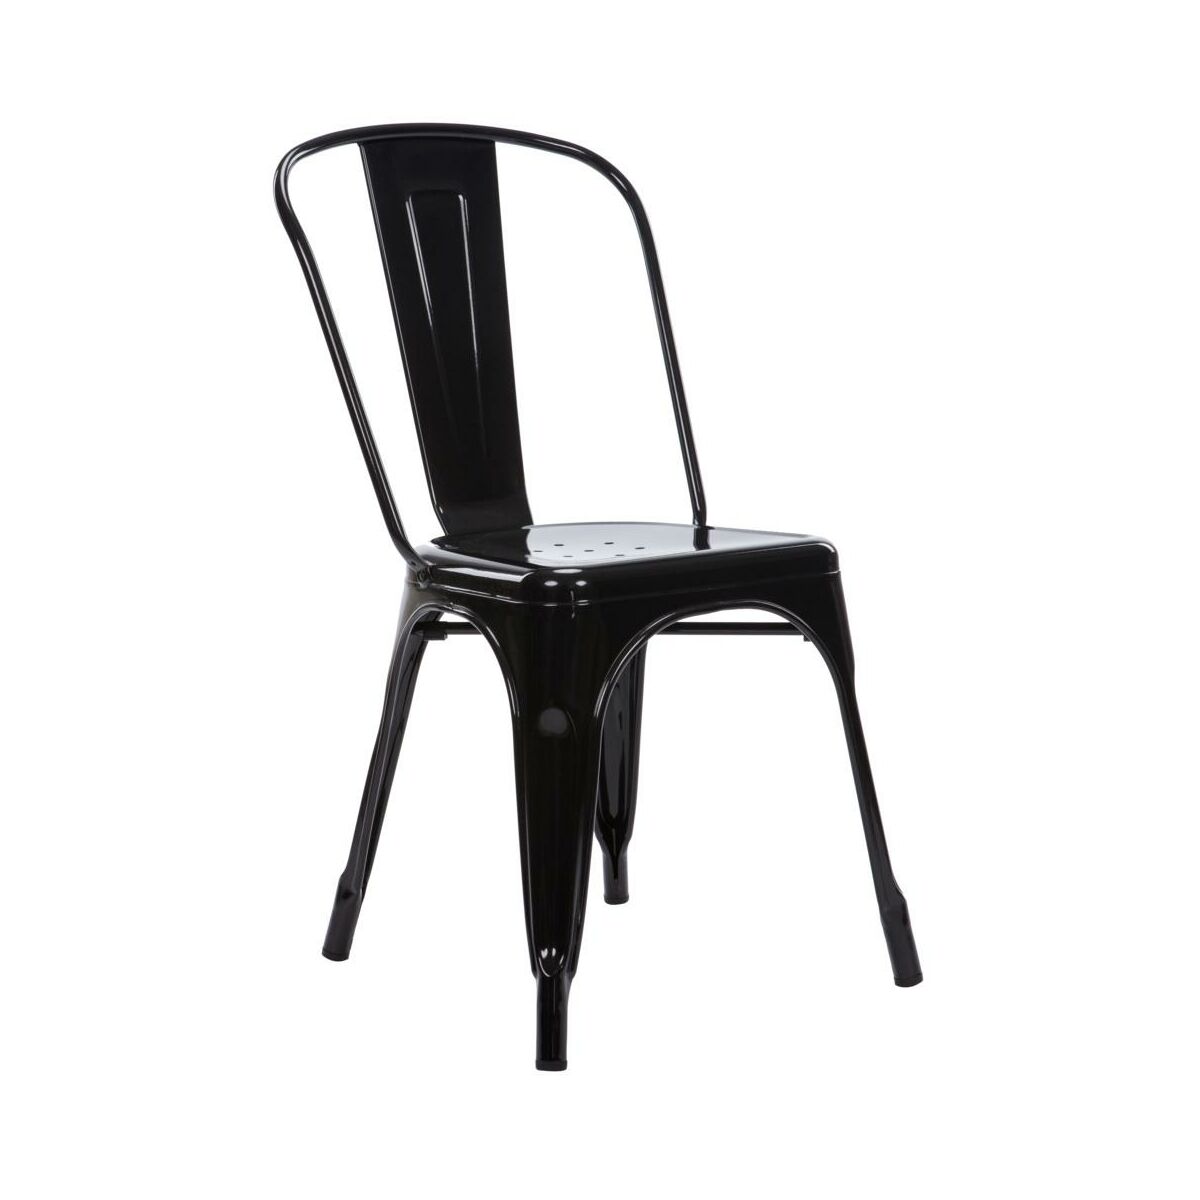 Krzeslo Ogrodowe Altea Stalowe Czarne Krzesla Fotele Lawki Ogrodowe W Atrakcyjnej Cenie W Sklepach Leroy Merlin